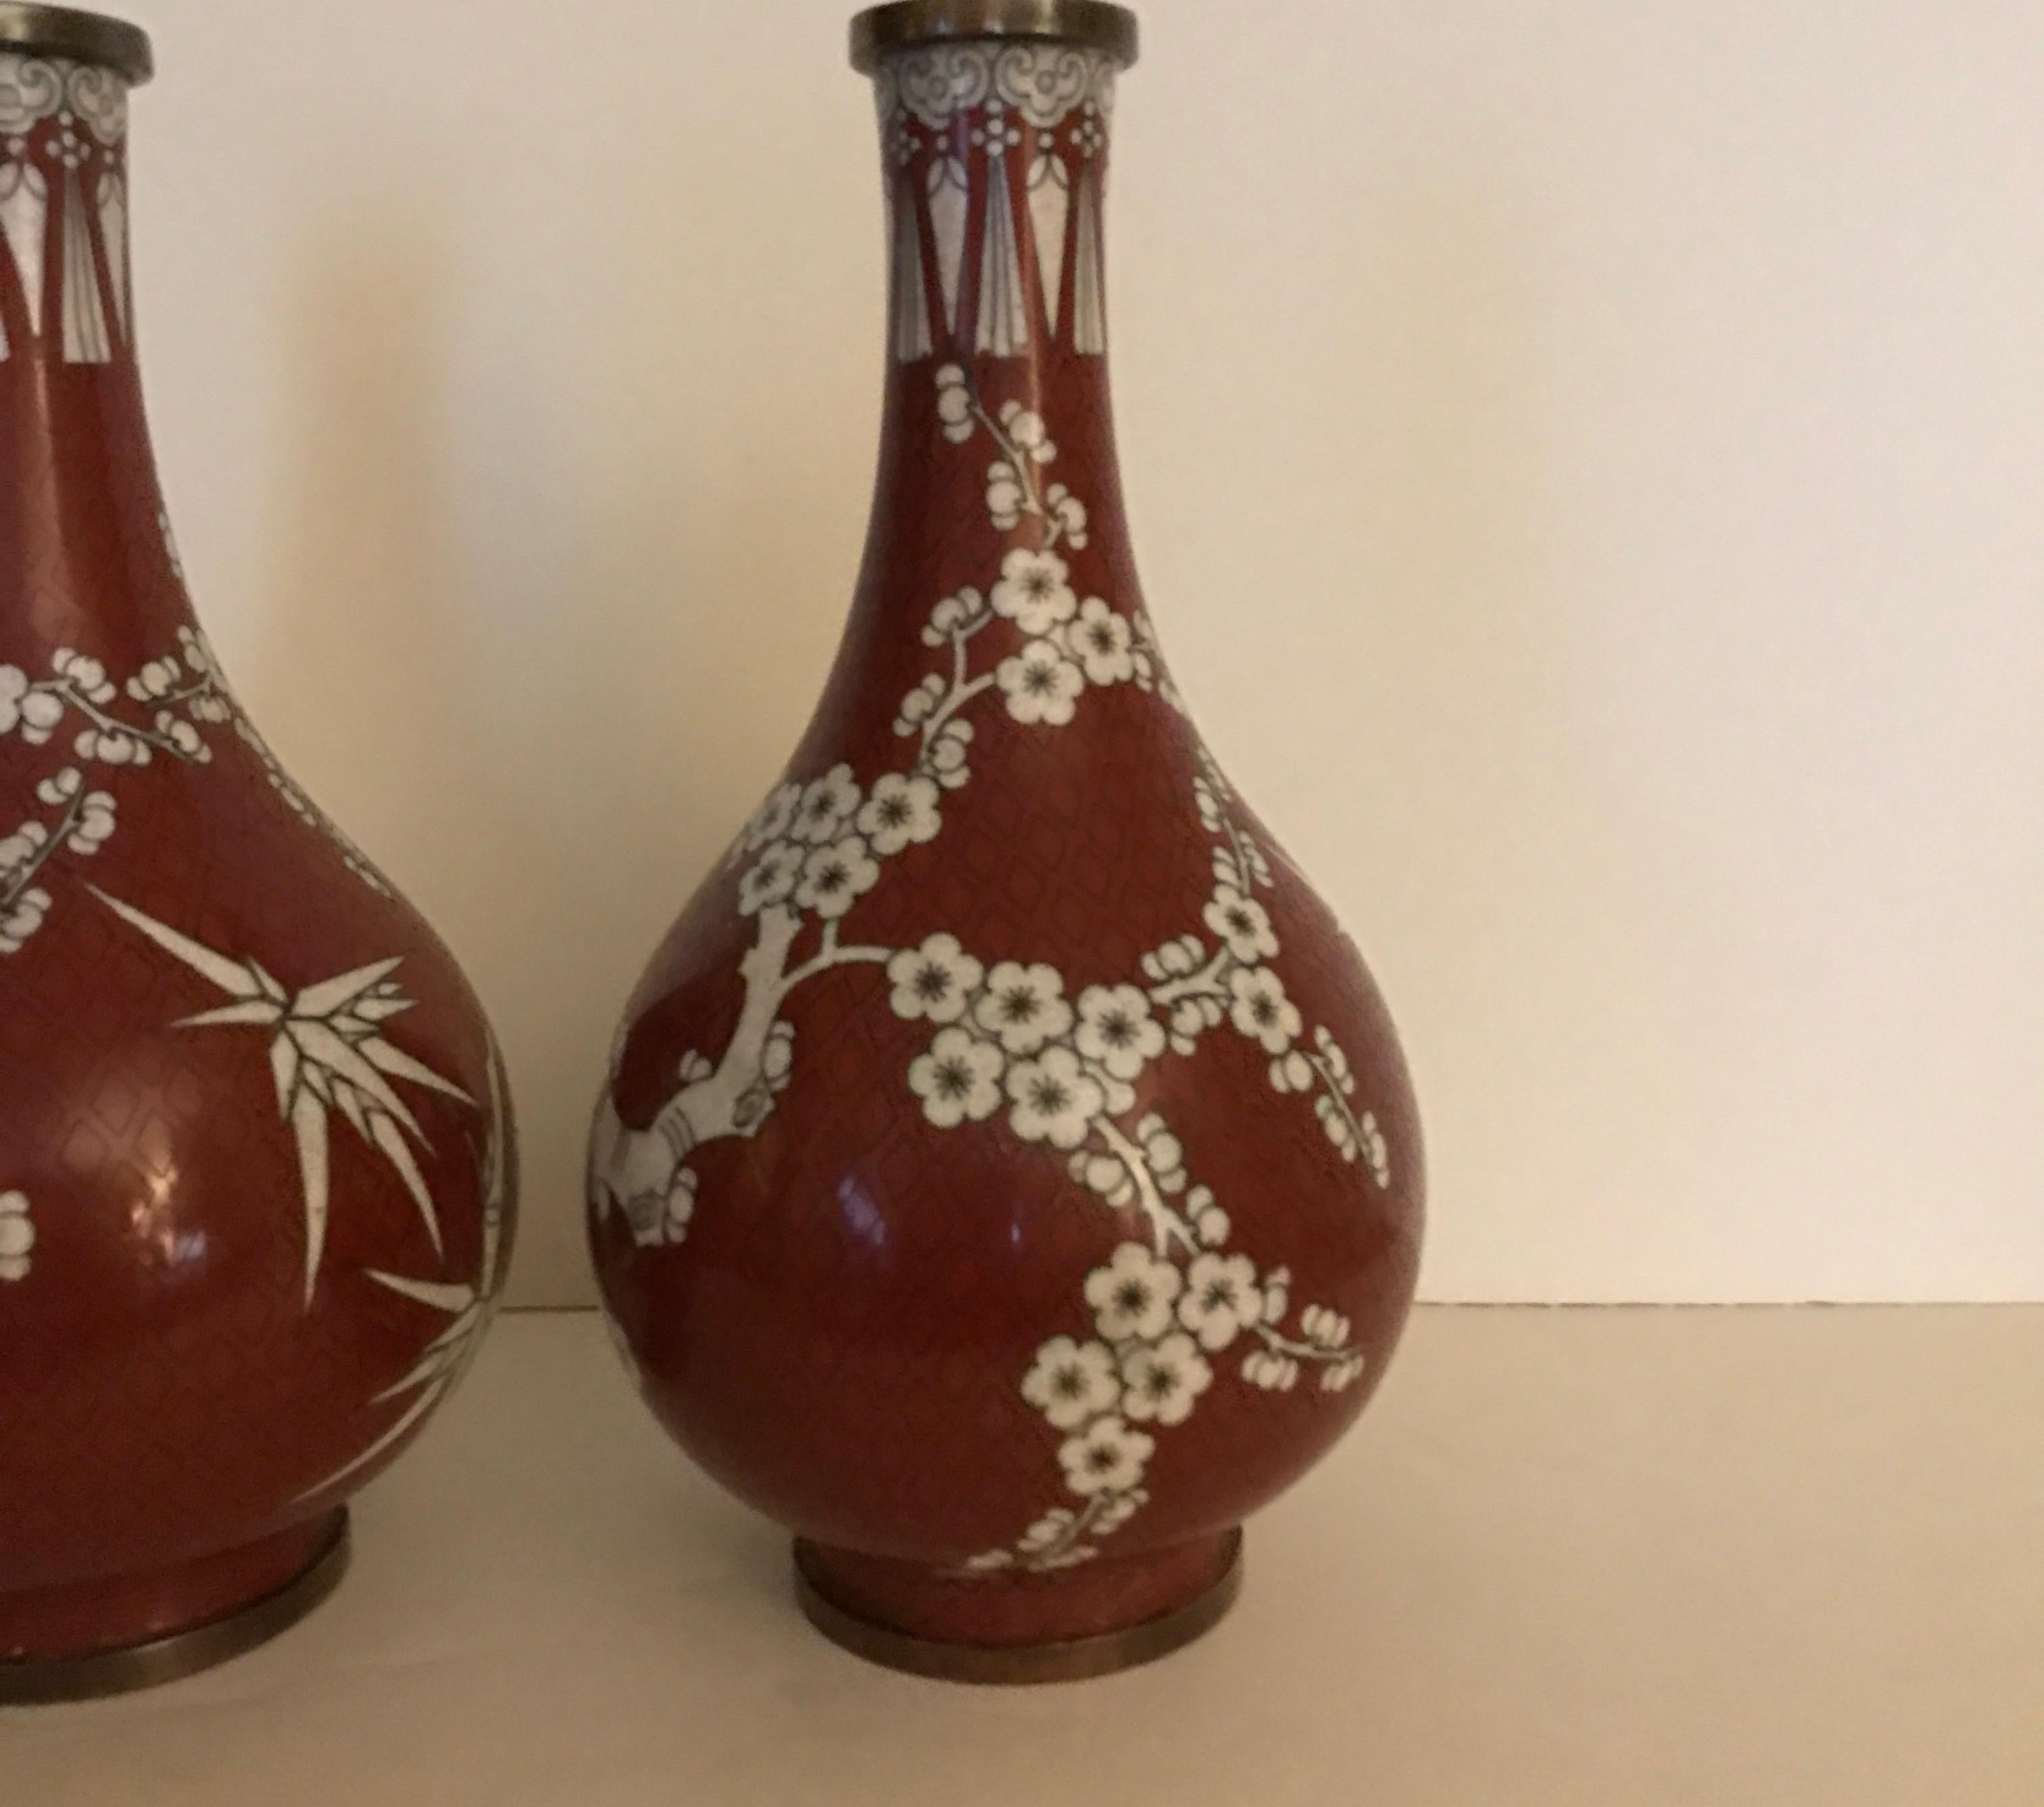 Paire de vases en cloisonné de Chine de couleur cinabre et blanc. La forme du Gordes avec un cou effilé et un corps bulbeux. Le motif est une fleur de cerisier avec des branches de bambou.... Antiquité chinoise, vers 1900.